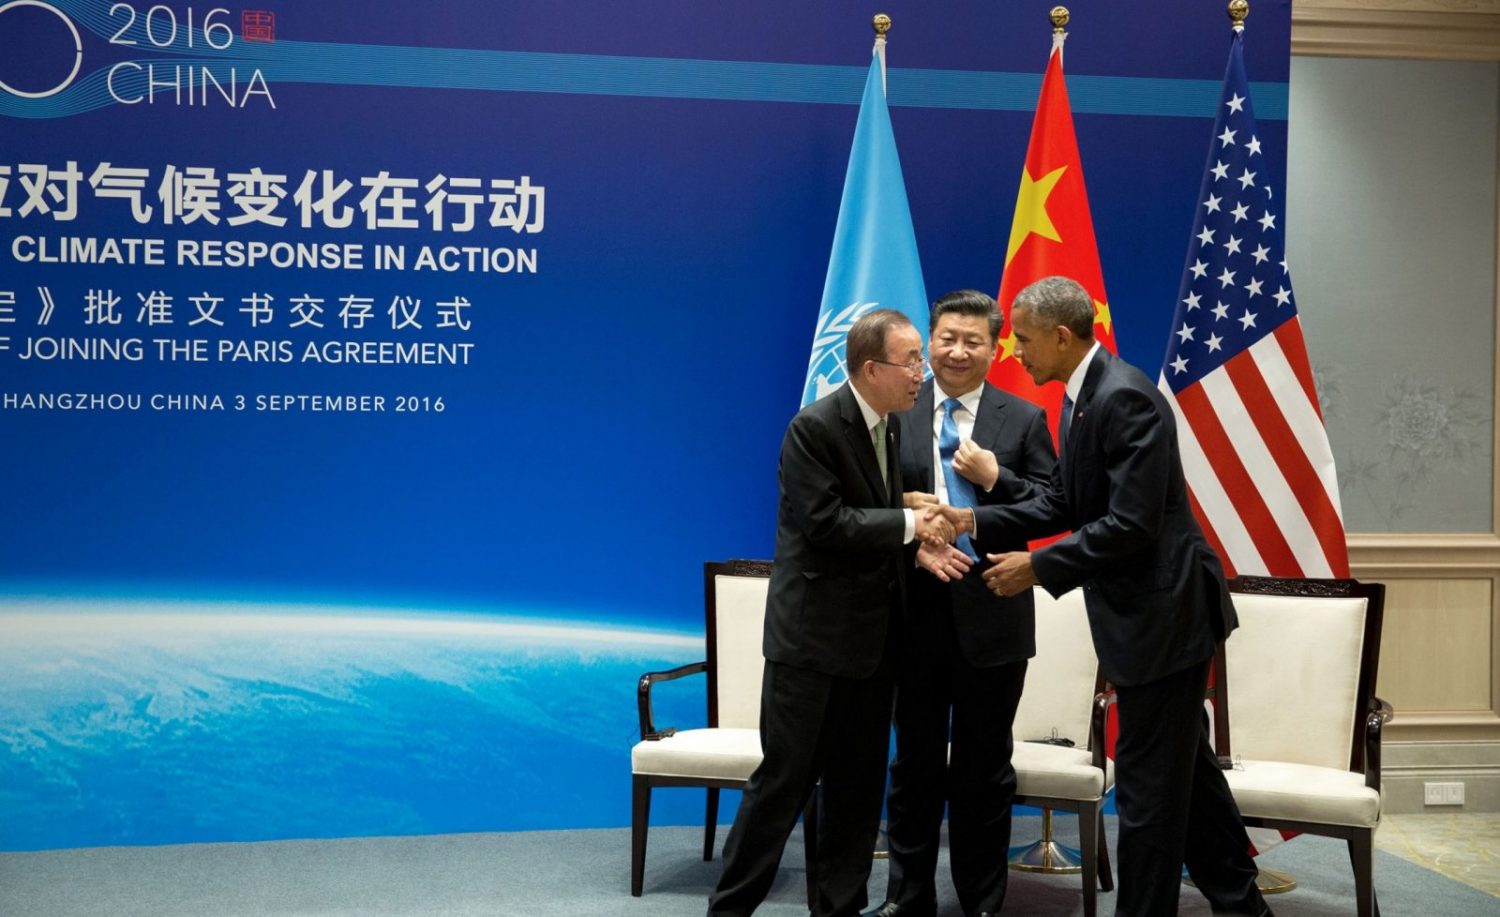 China Paris Agreement Climate Image Pete Souza